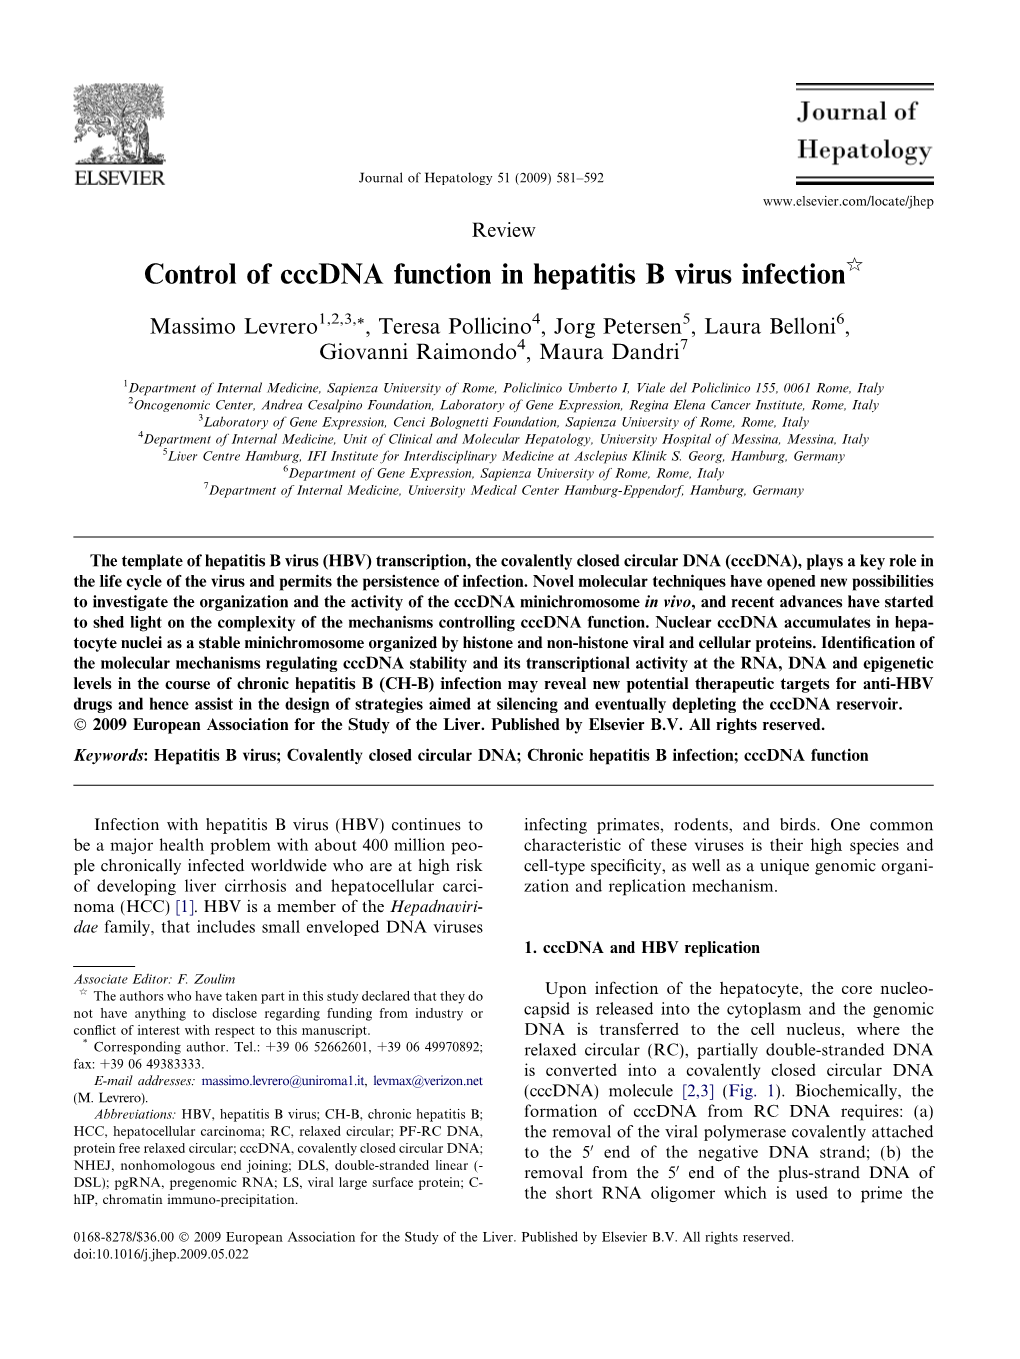 Control of Cccdna Function in Hepatitis B Virus Infectionq